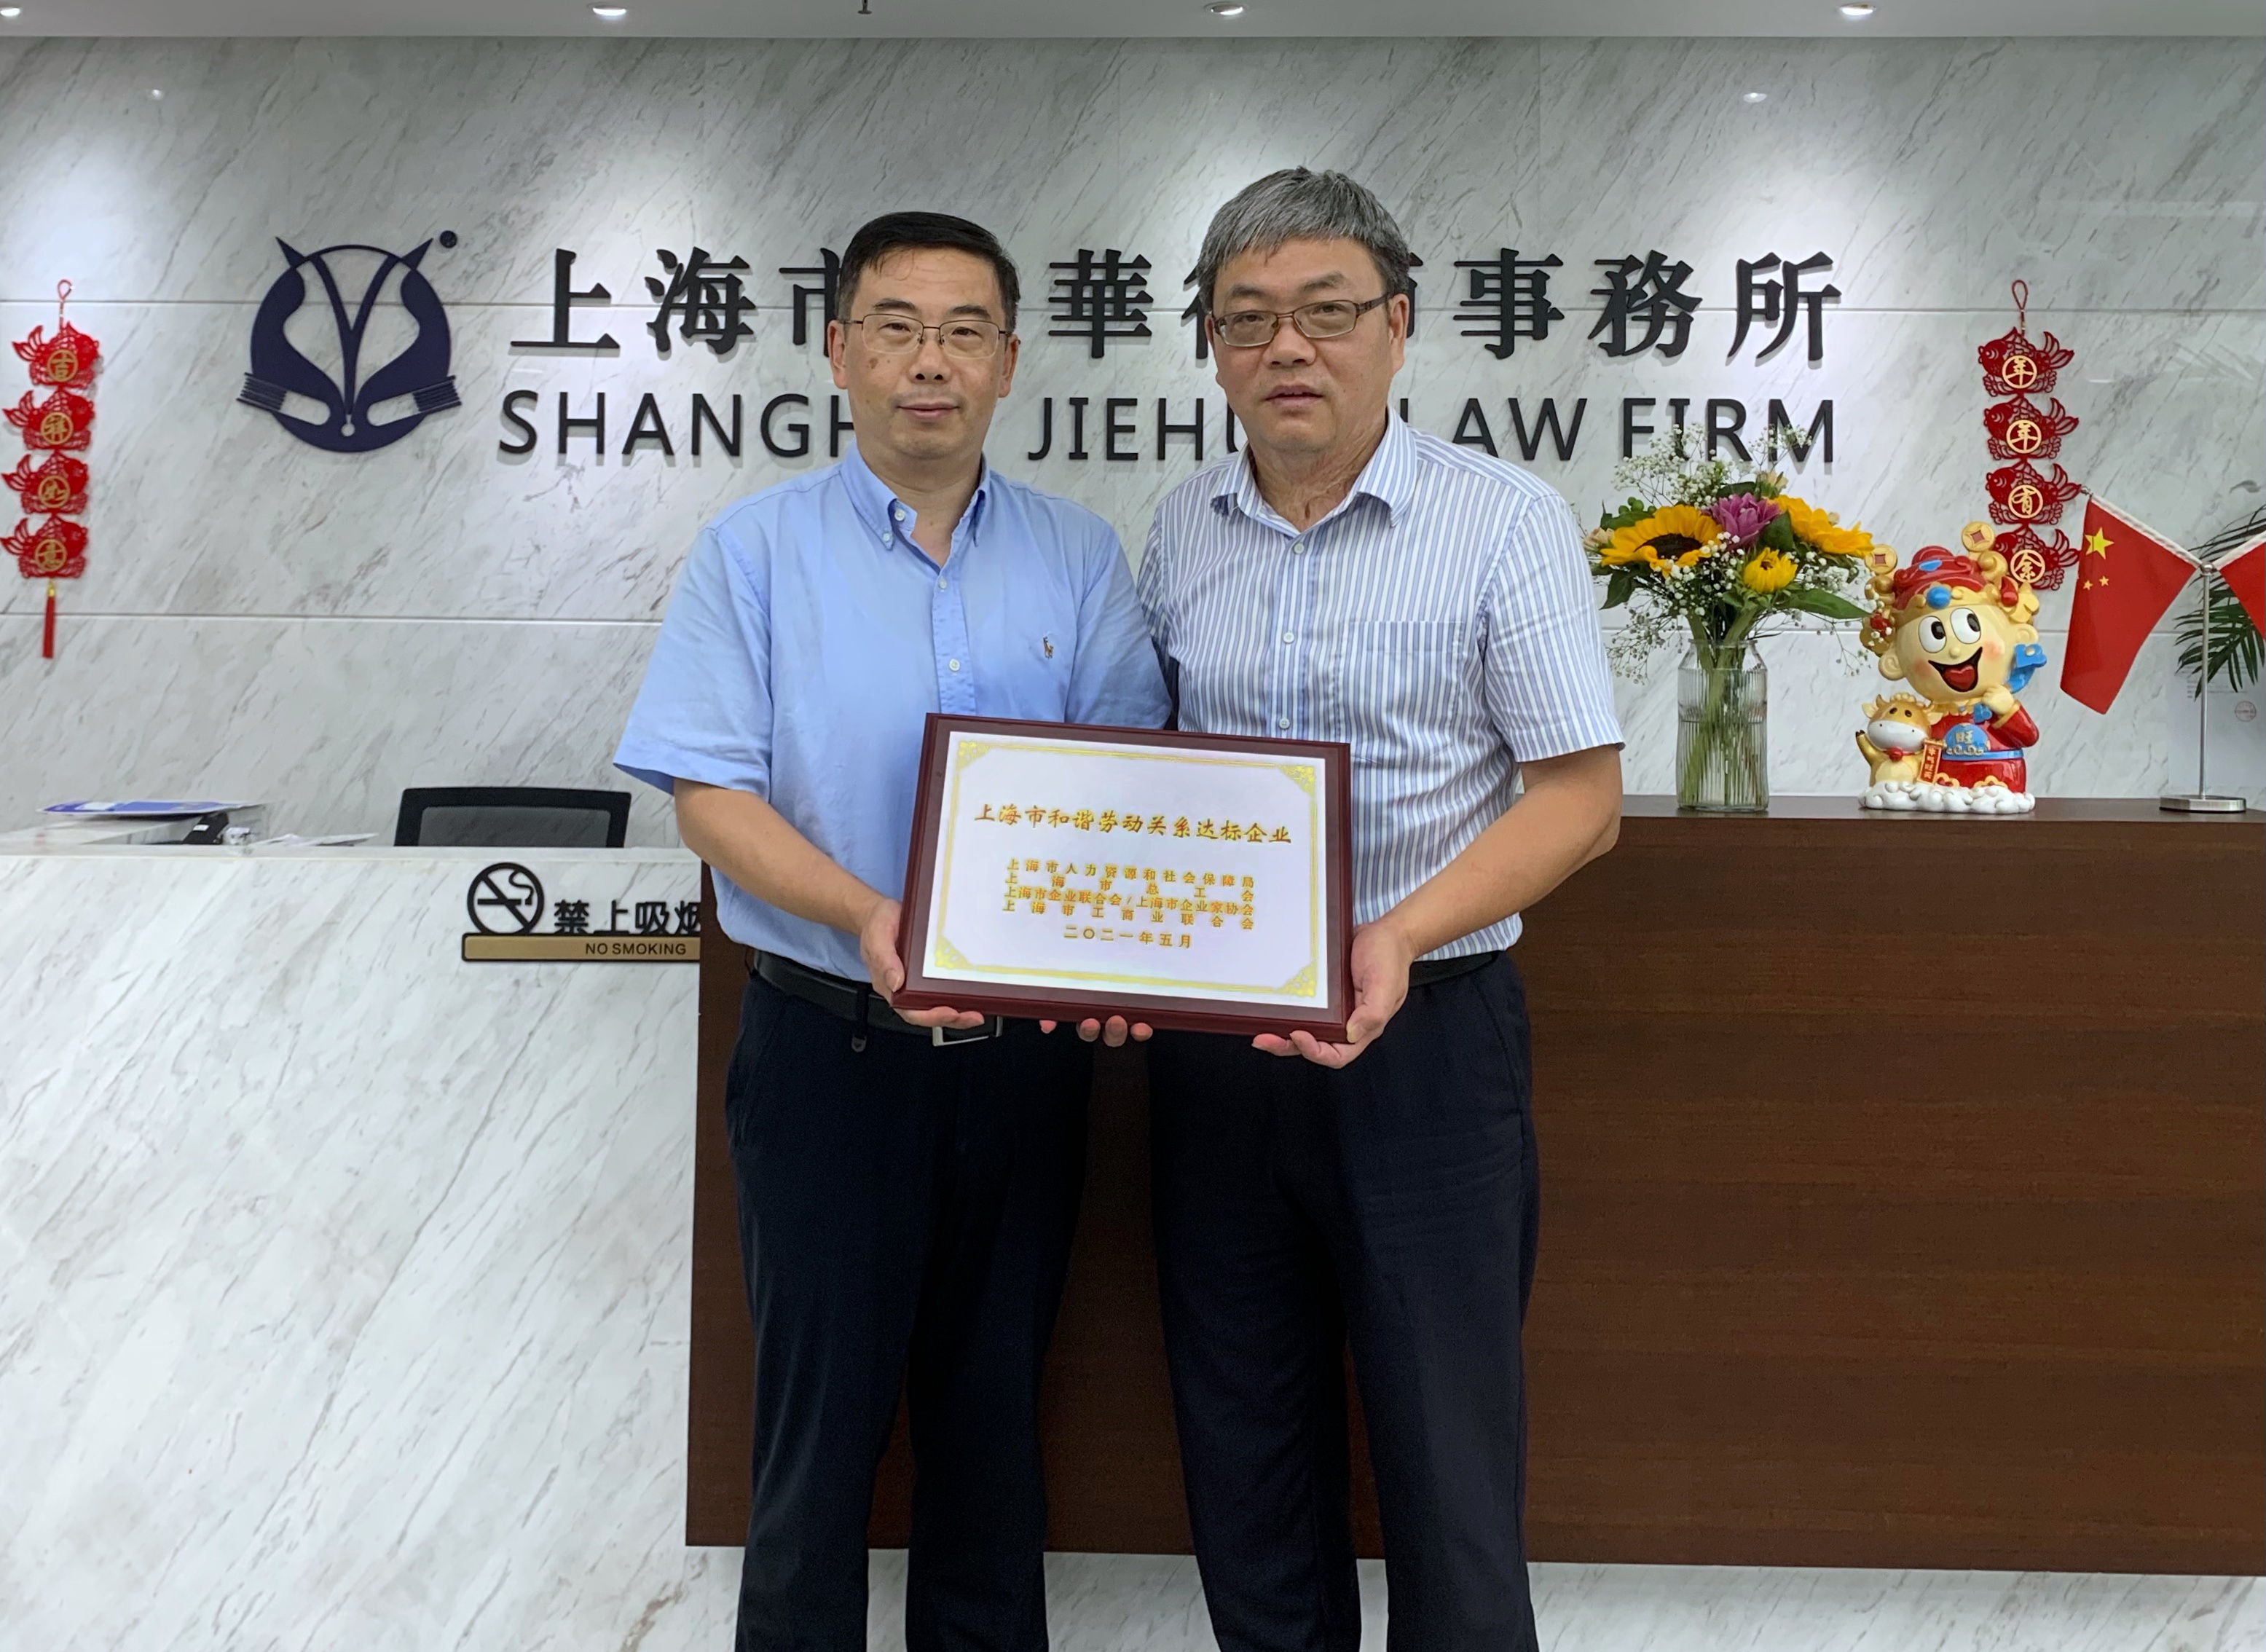 捷华律所荣获“上海市和谐劳动关系达标企业”称号